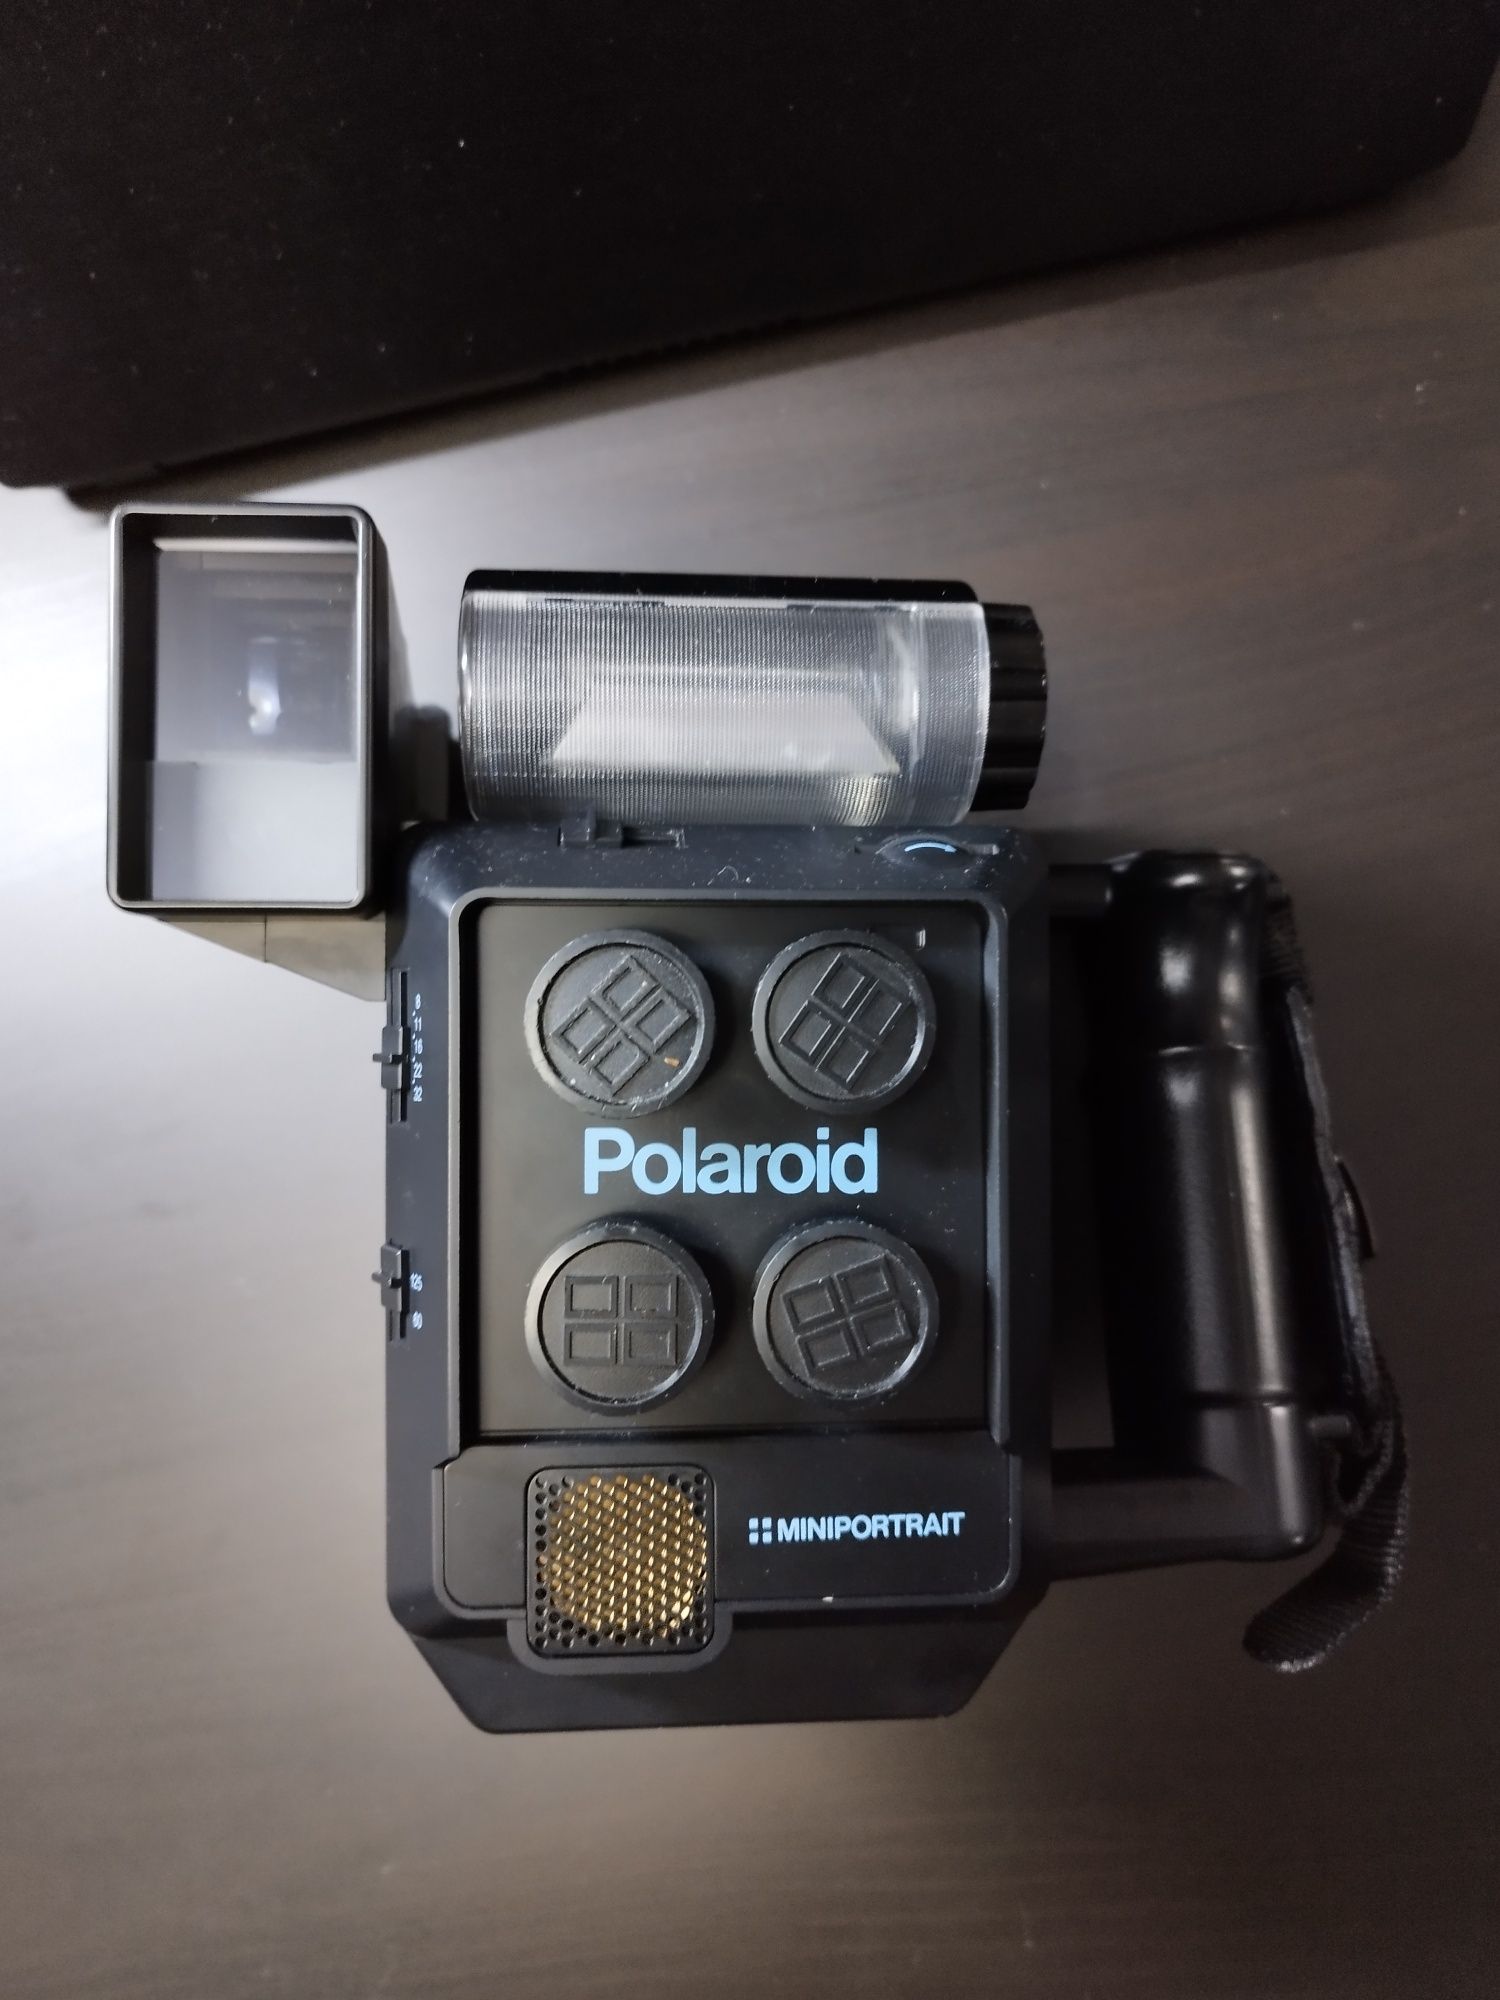 Polaroid miniportrait 403